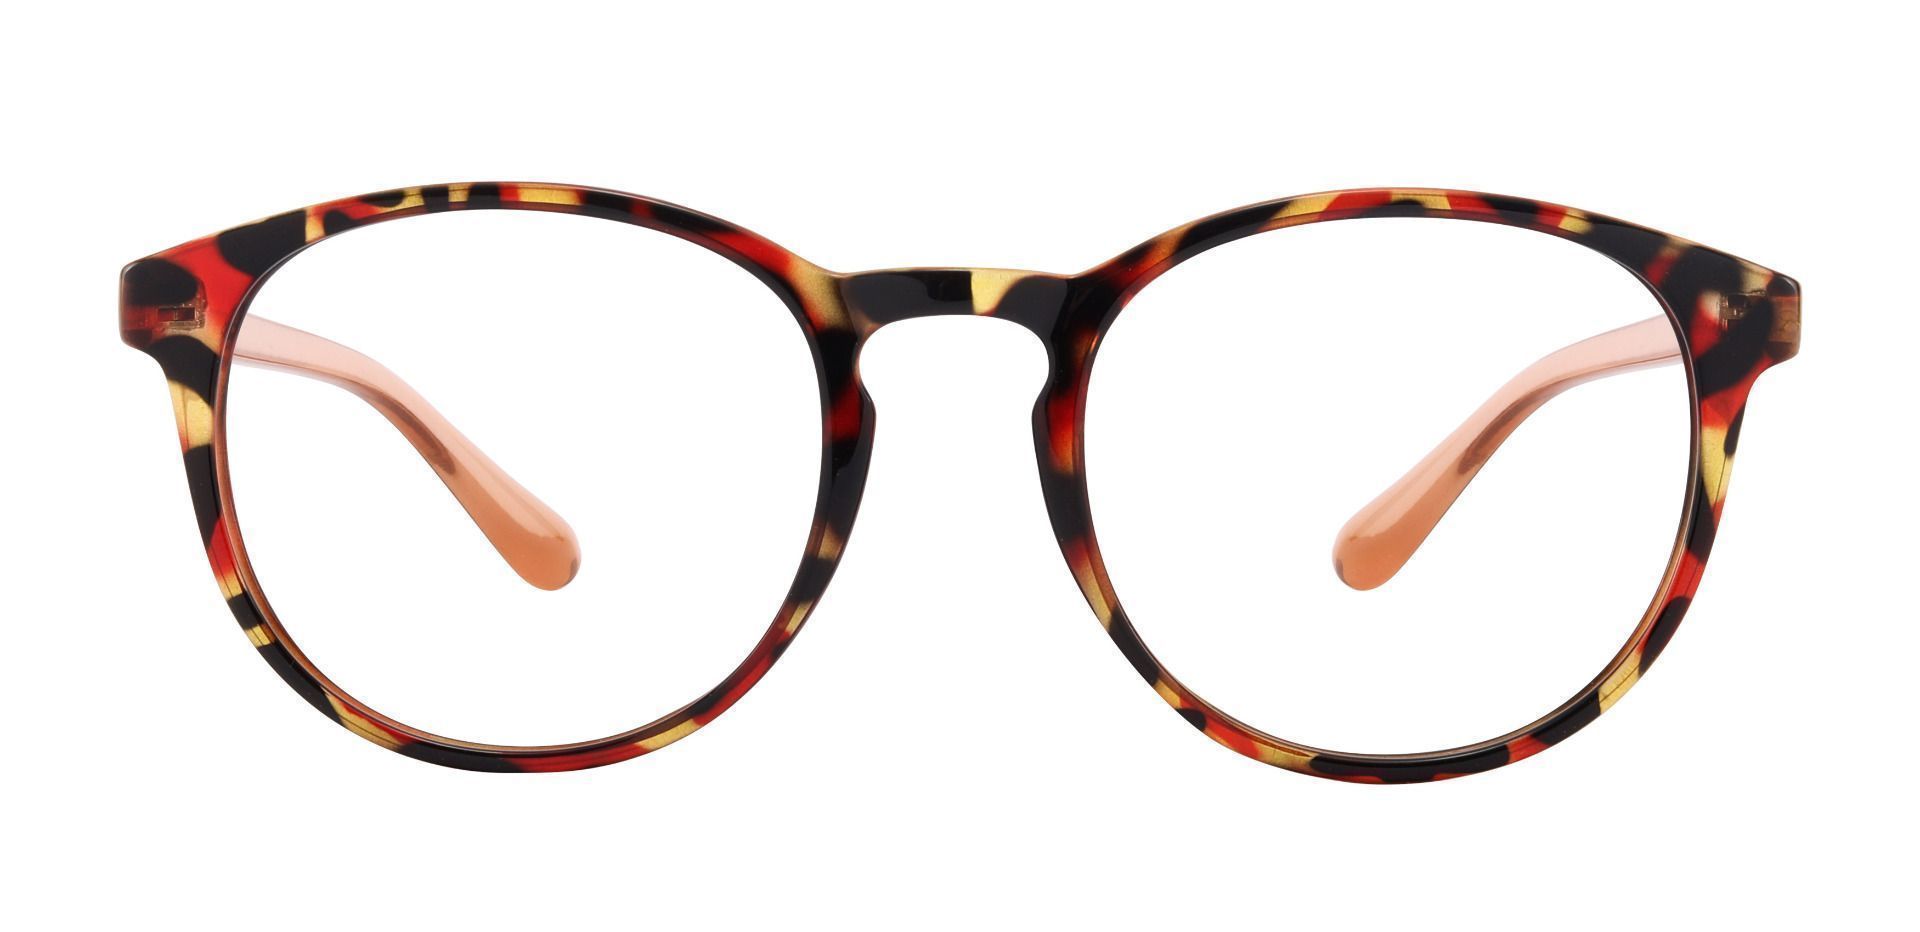 Clarita Oval Non-Rx Glasses - Red